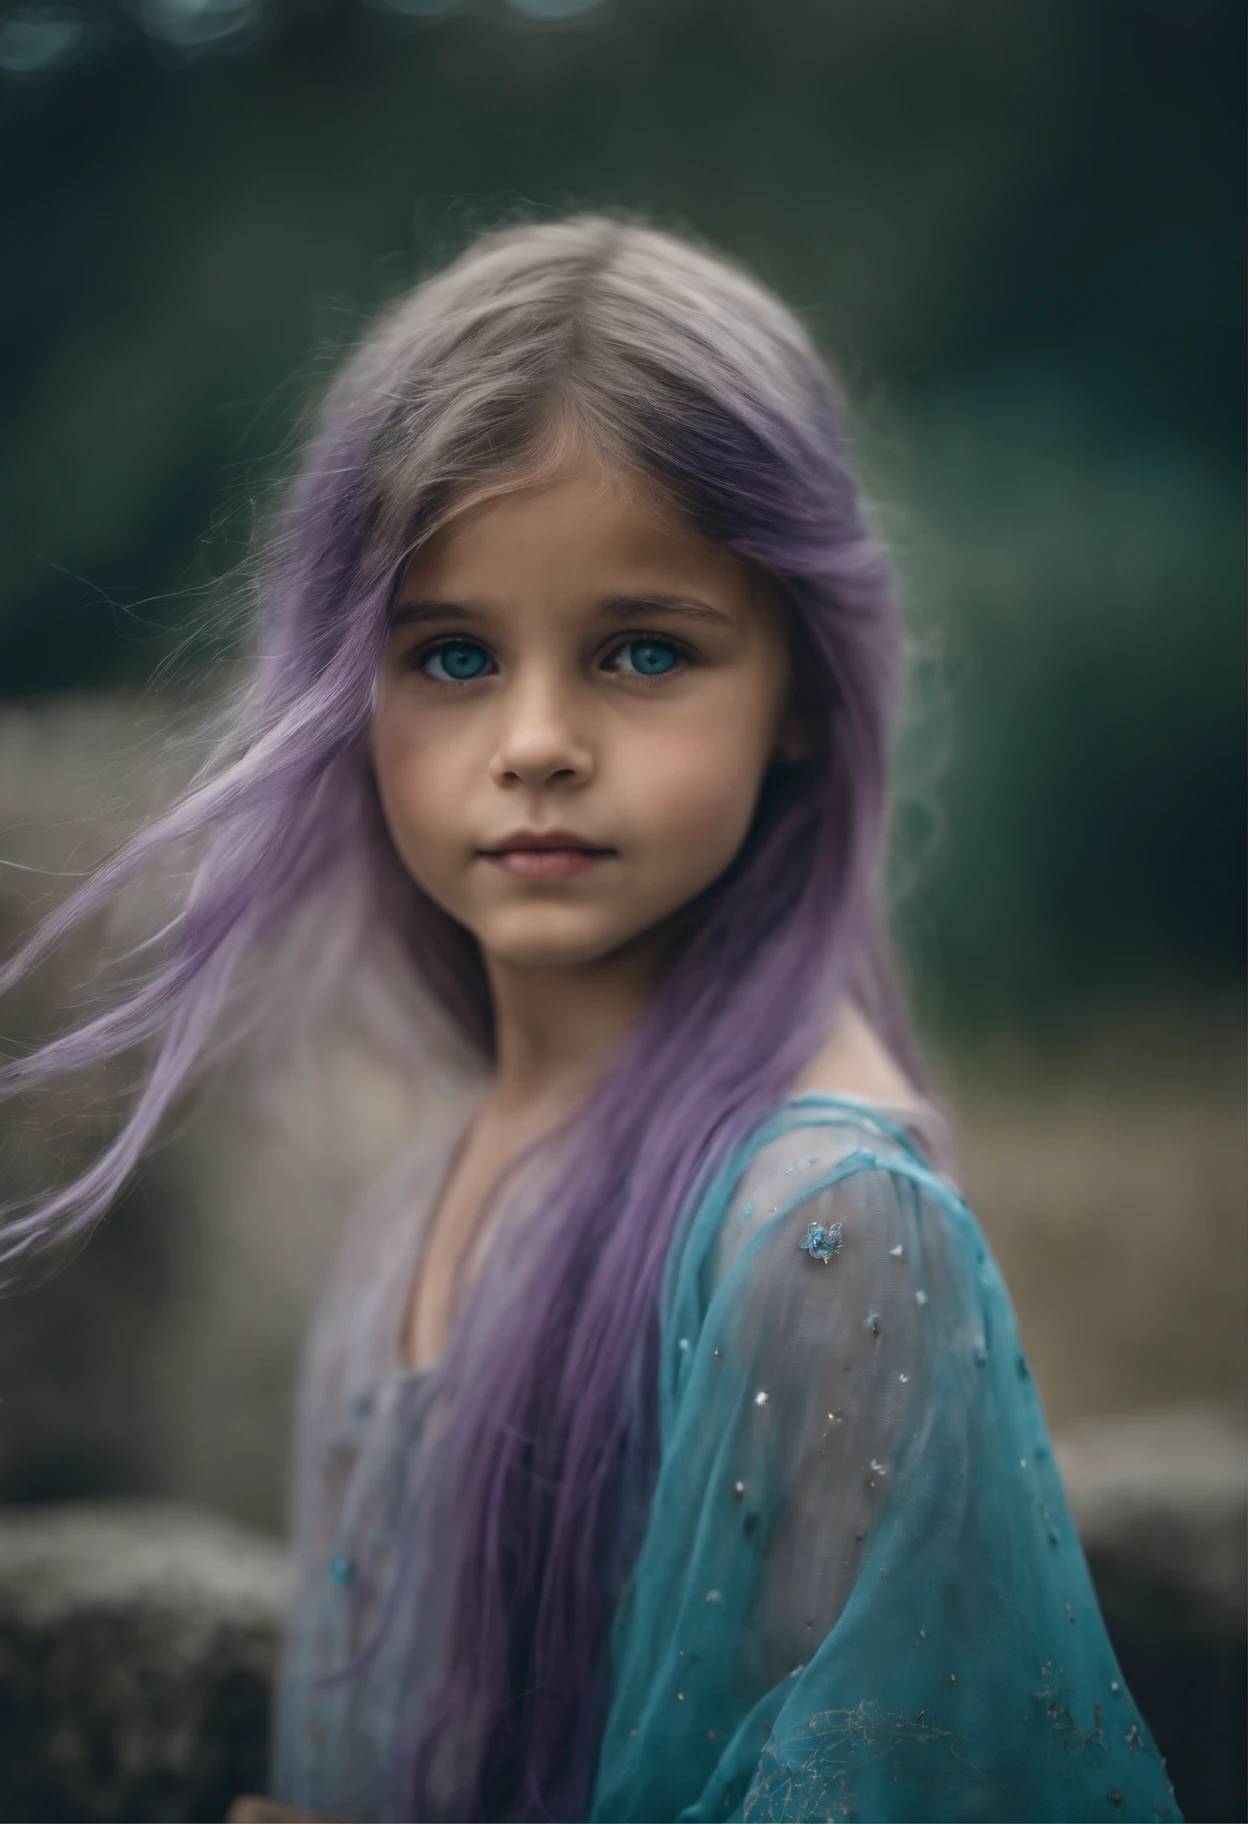 美しい少女, 約8歳. The girl has long light blue 髪, straight 髪, ((乱雑な)) 髪, 前髪)) そして大きな青い目. 女の子はターコイズブルーのチュニックと紫のタイドパンツを着ています. ギリシャ神殿遺跡の背景. 星空.